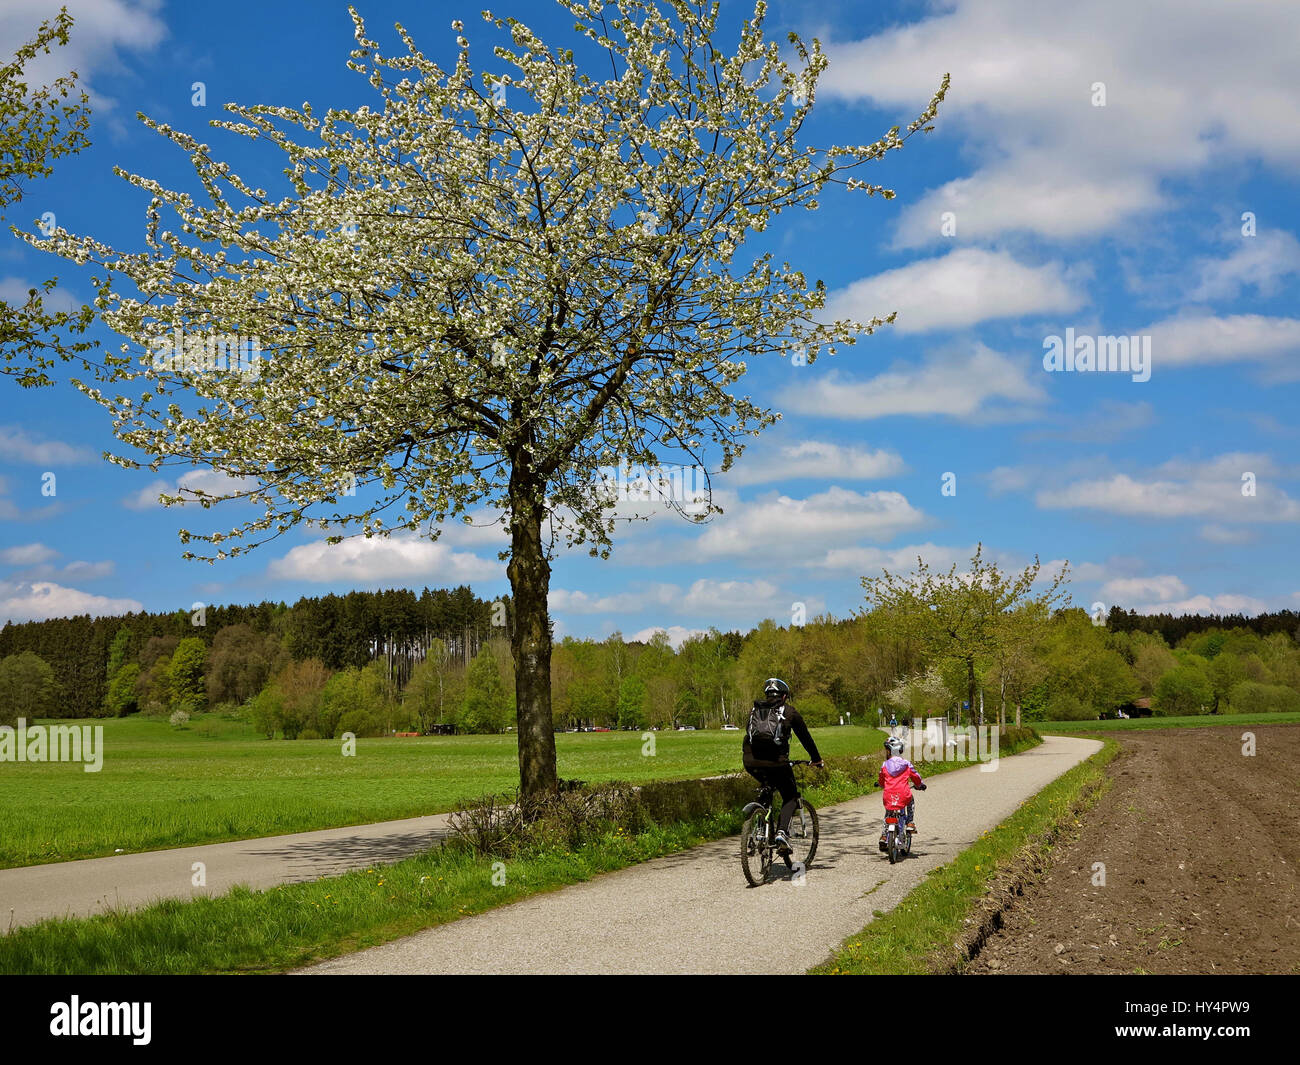 Germering, percorso e bikeway al Germeringer vedere (lago), i ciclisti, i bambini della bicicletta, alberi fioriti, campi, prati e boschi, bianco-blu del cielo, la molla Foto Stock